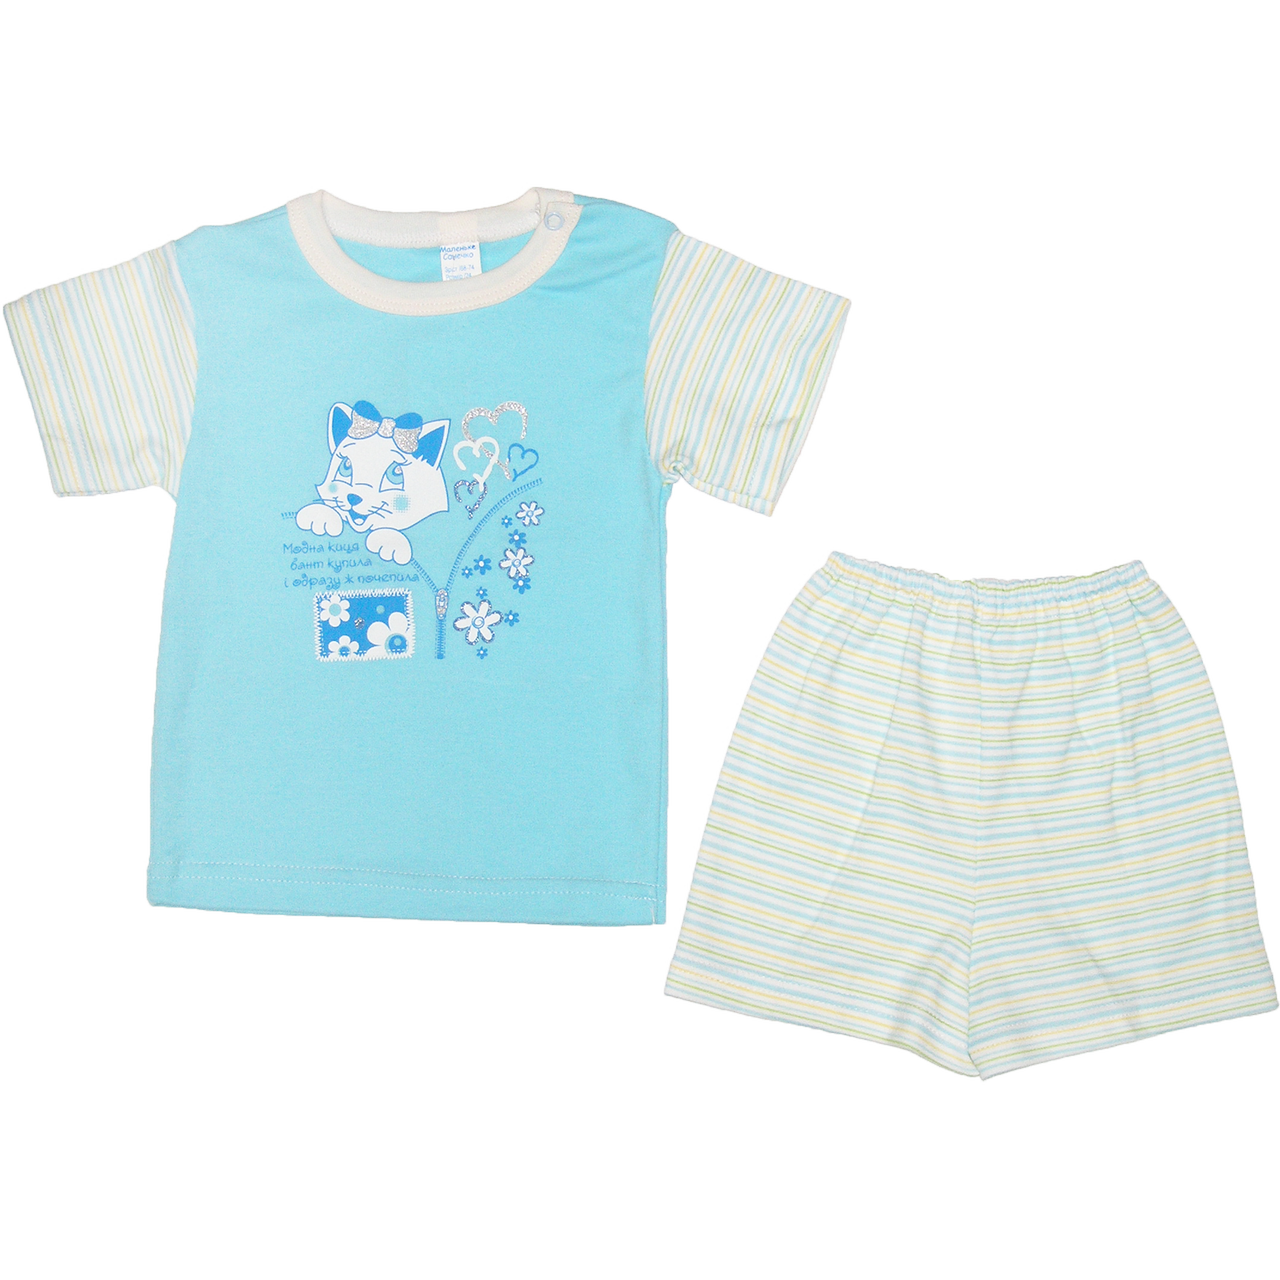 Костюмчик для дівчинки: футболка з коротким рукавом і шортики, інтерлок; ТМ Маленьке Сонечко, р. 74